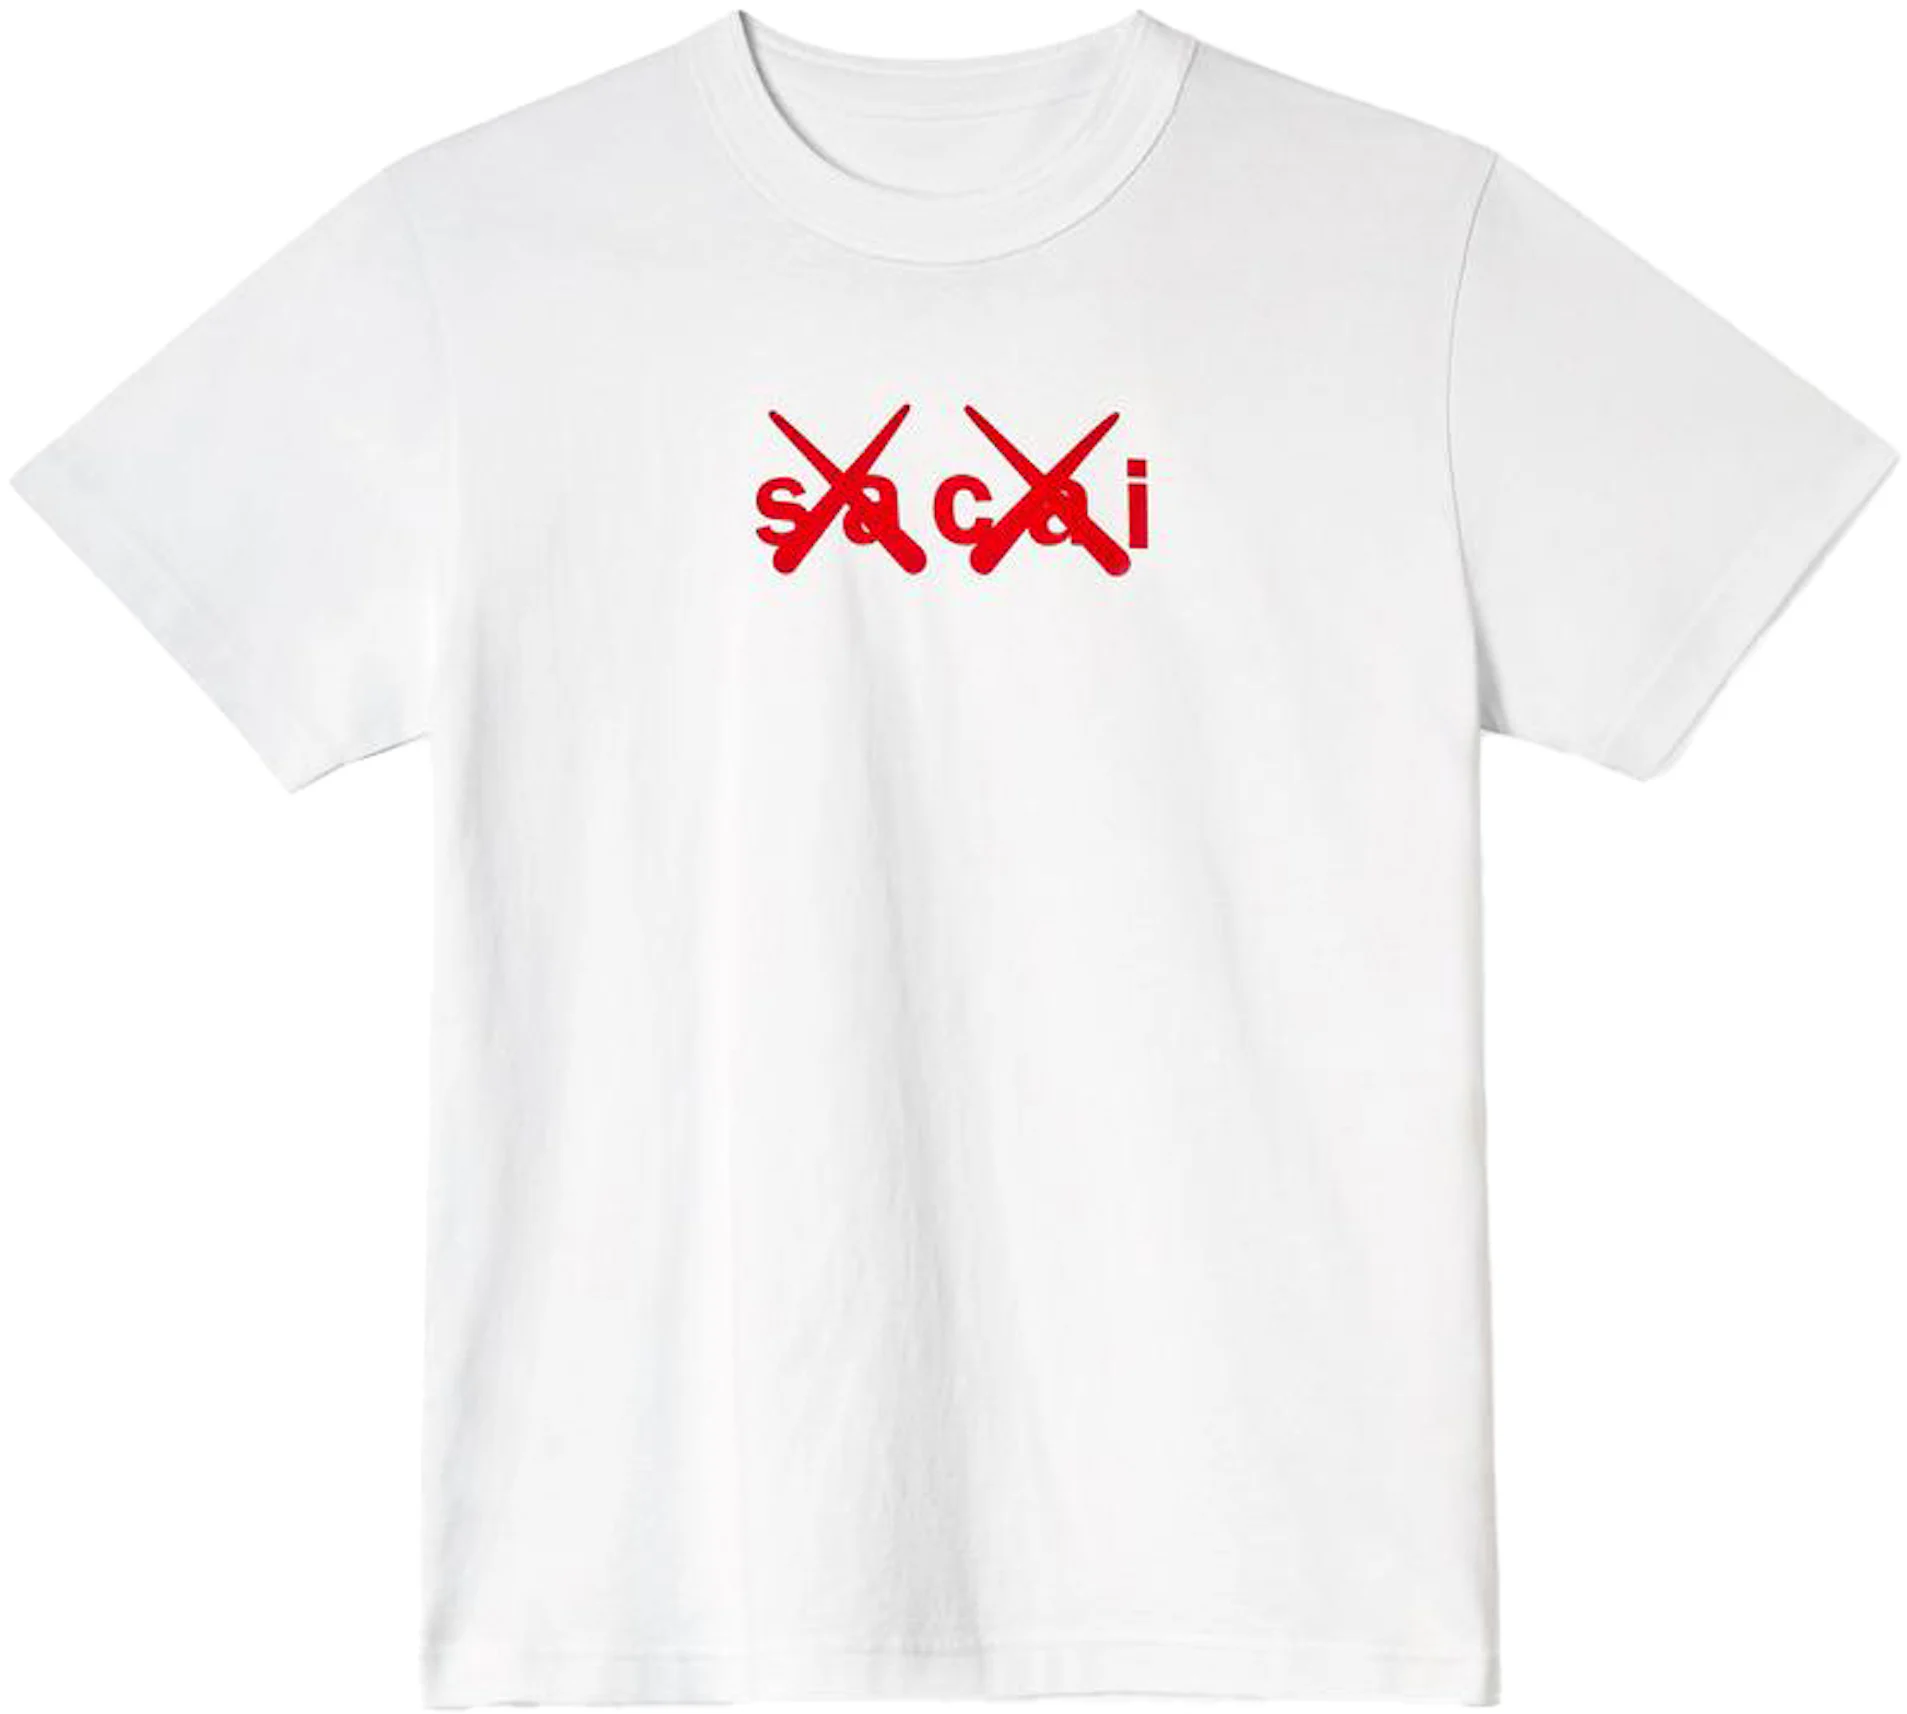 Buy KAWS Sacai Streetwear - StockX